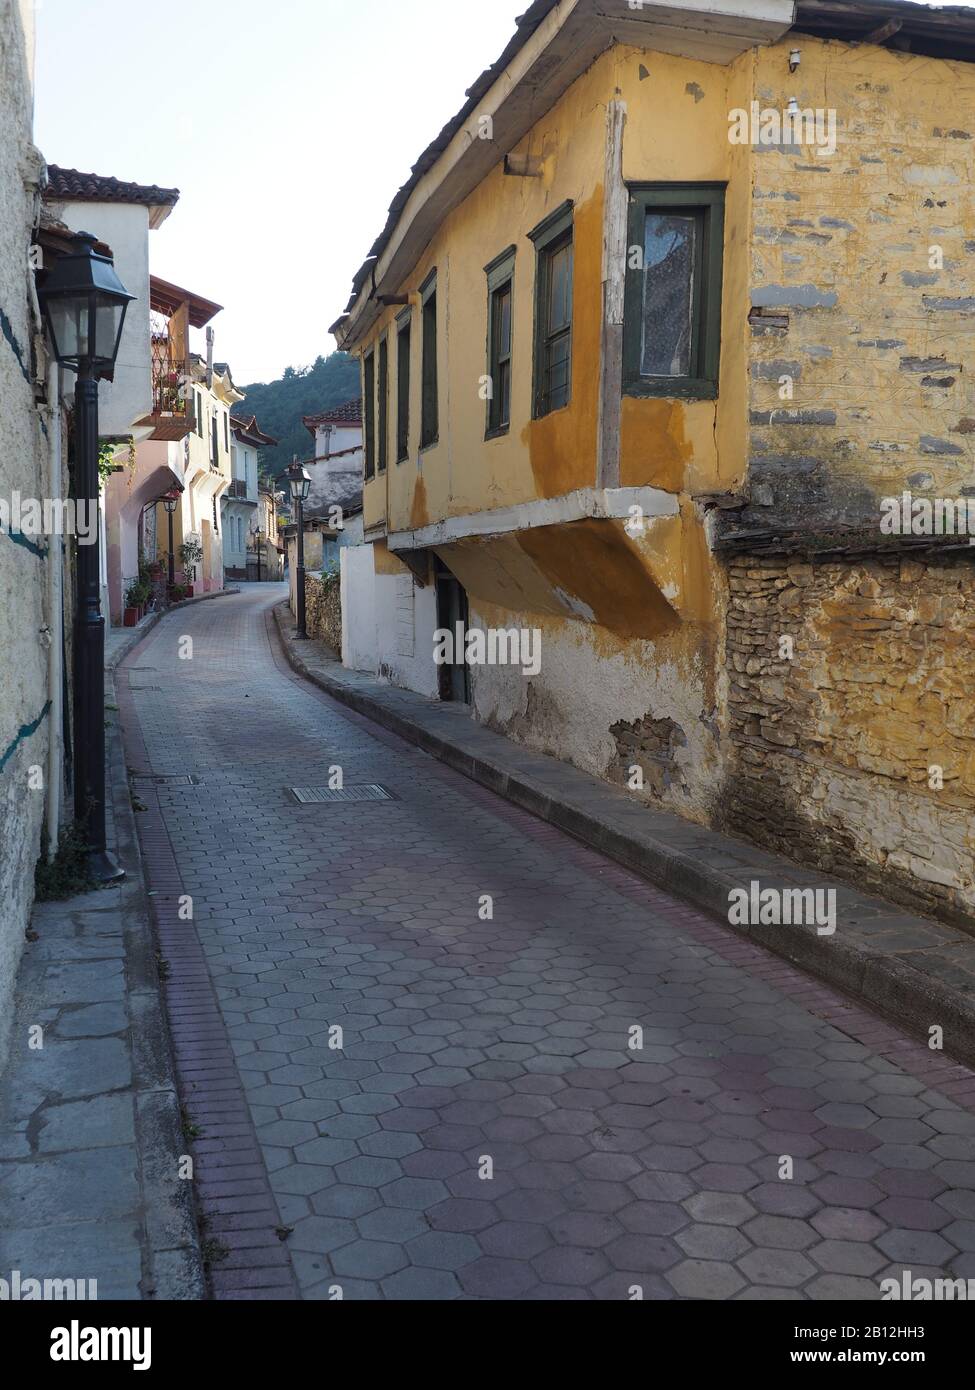 Scena di strada in Eleftheroupoli, Pangaio, Macedonia Orientale e Tracia, Grecia mostrando vecchi edifici tradizionali, alcuni che necessitano di riparazione. Foto Stock